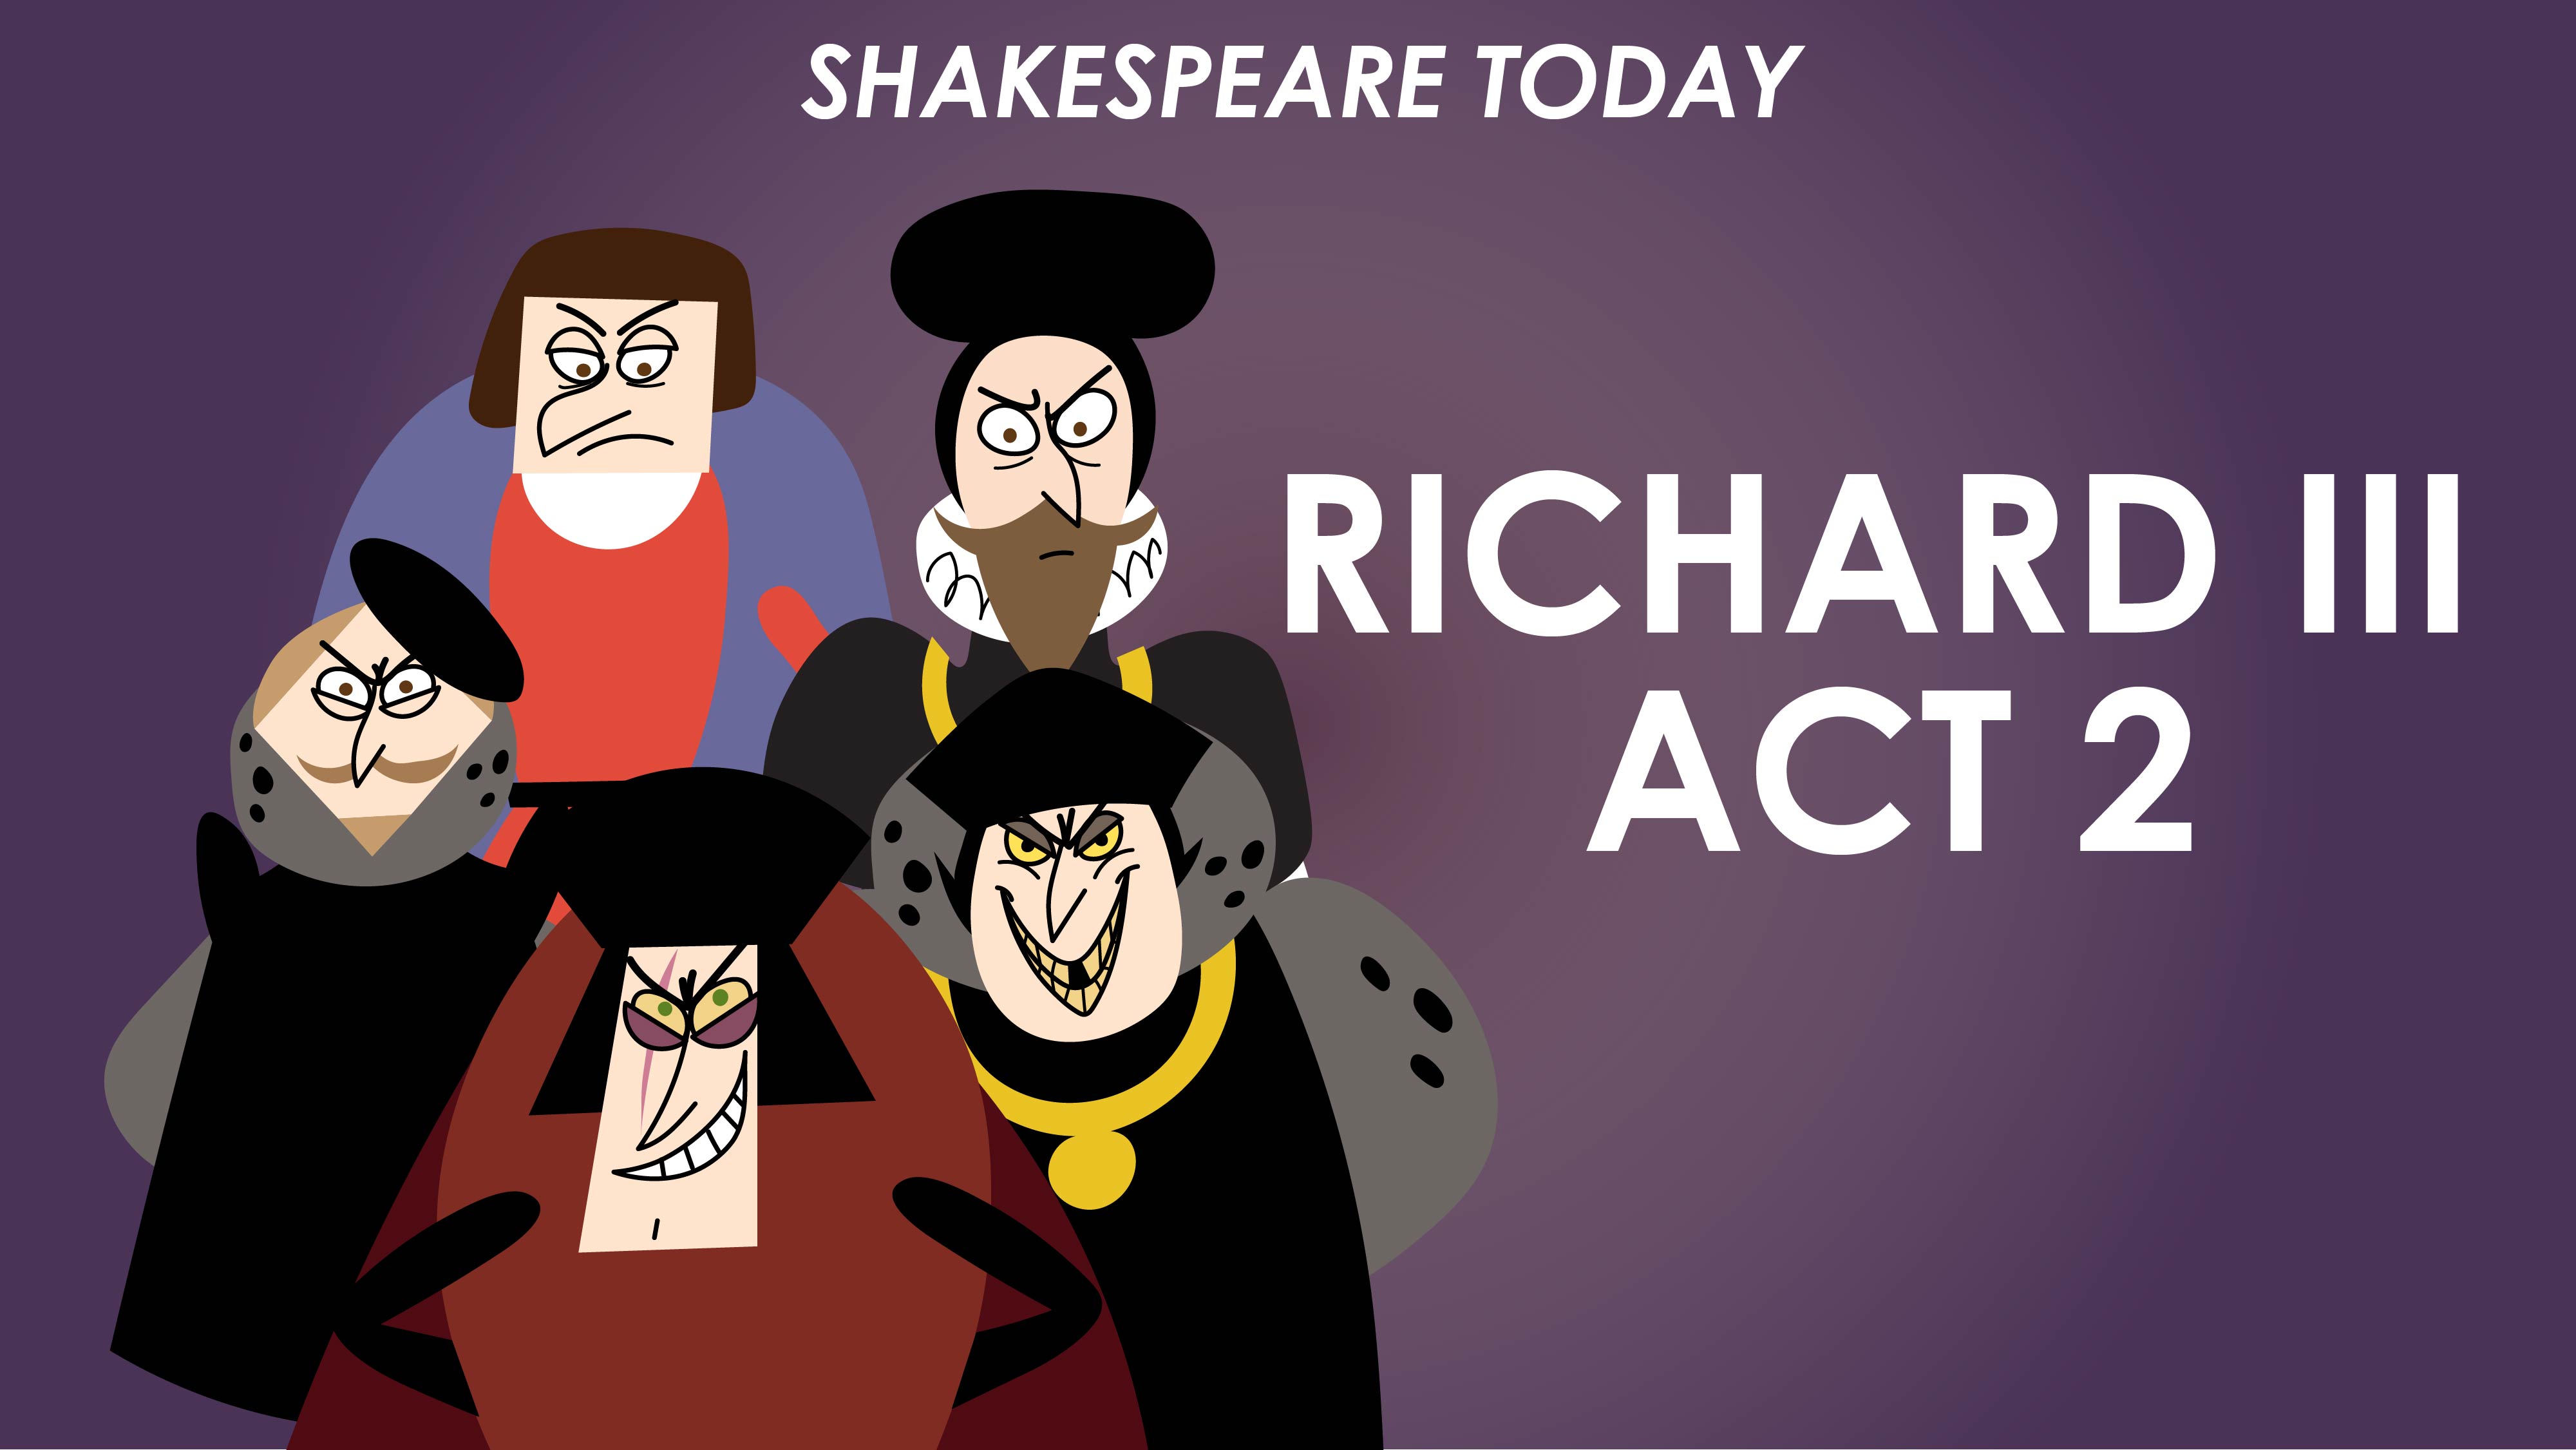 Richard III Act 2 Summary - Shakespeare Today Series